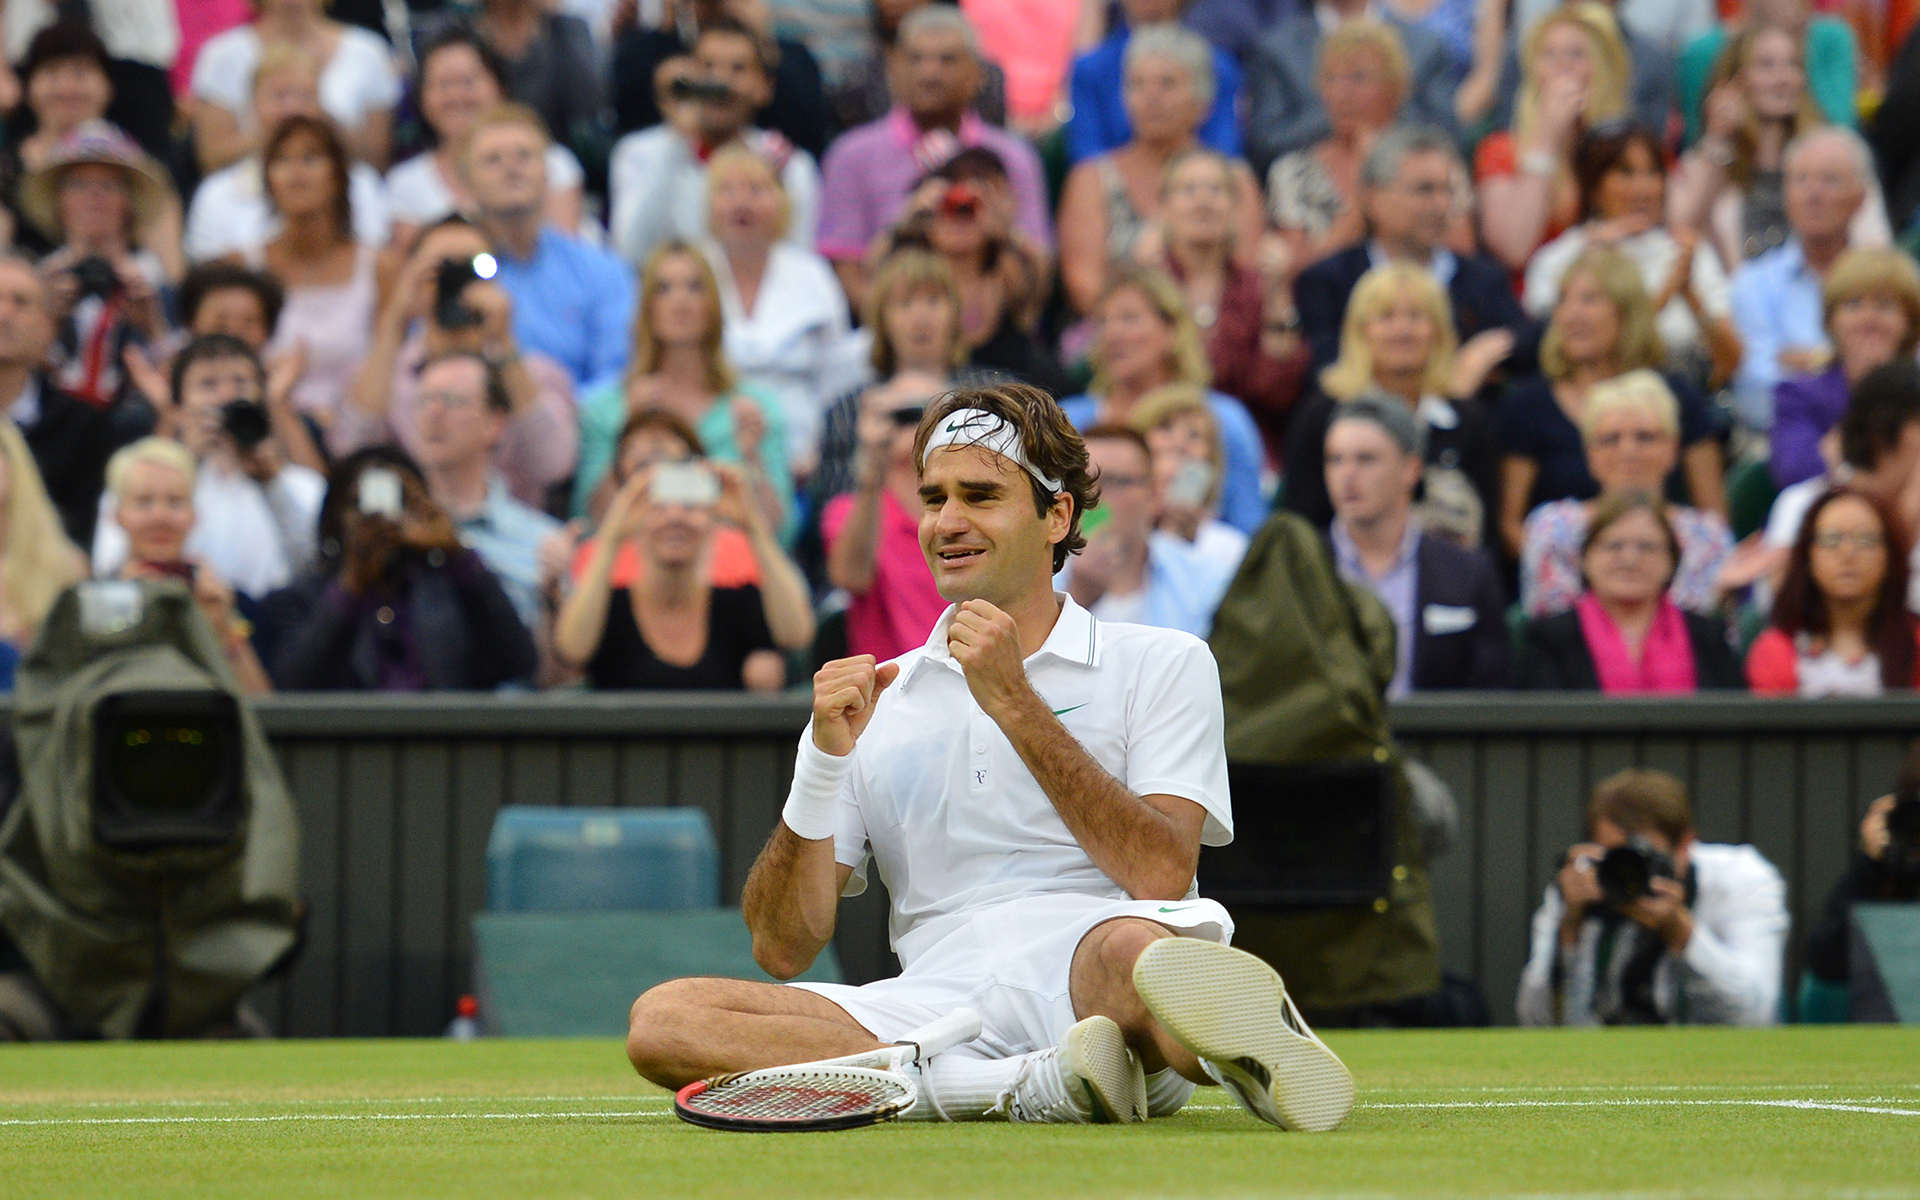 Tenis 1920x1200 077 Wimbledon 2012 Roger Federer